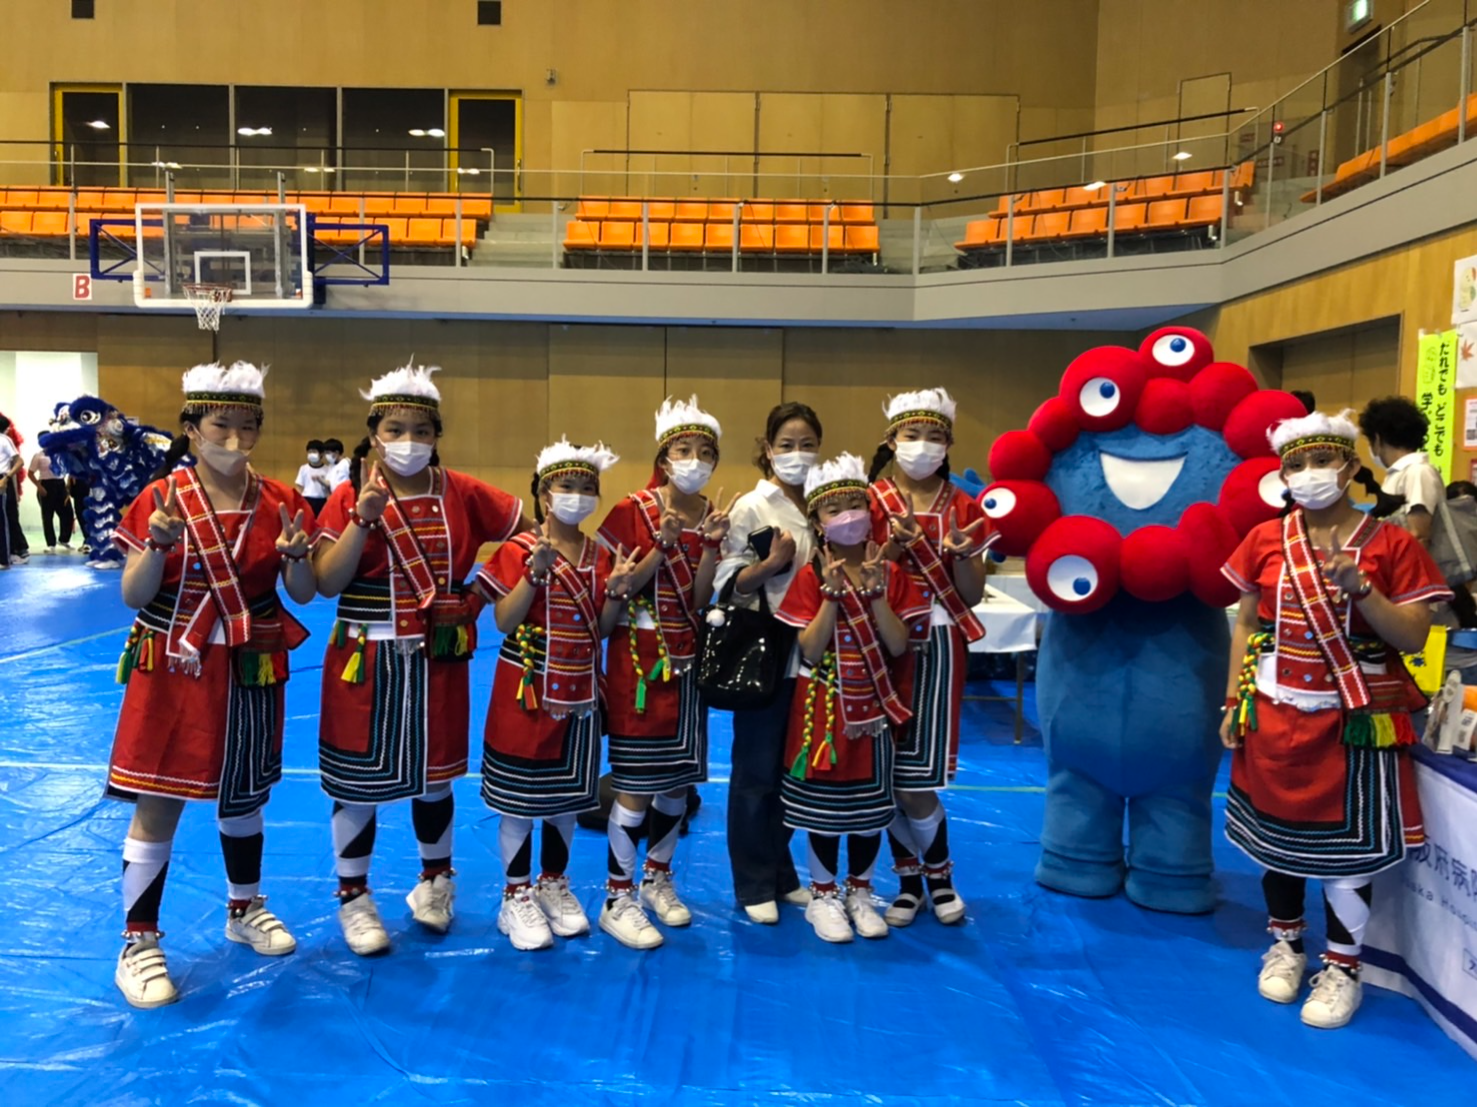 大阪中華學校2022自聘文化教師 舞蹈「那魯灣」、「採茶趣」圖片